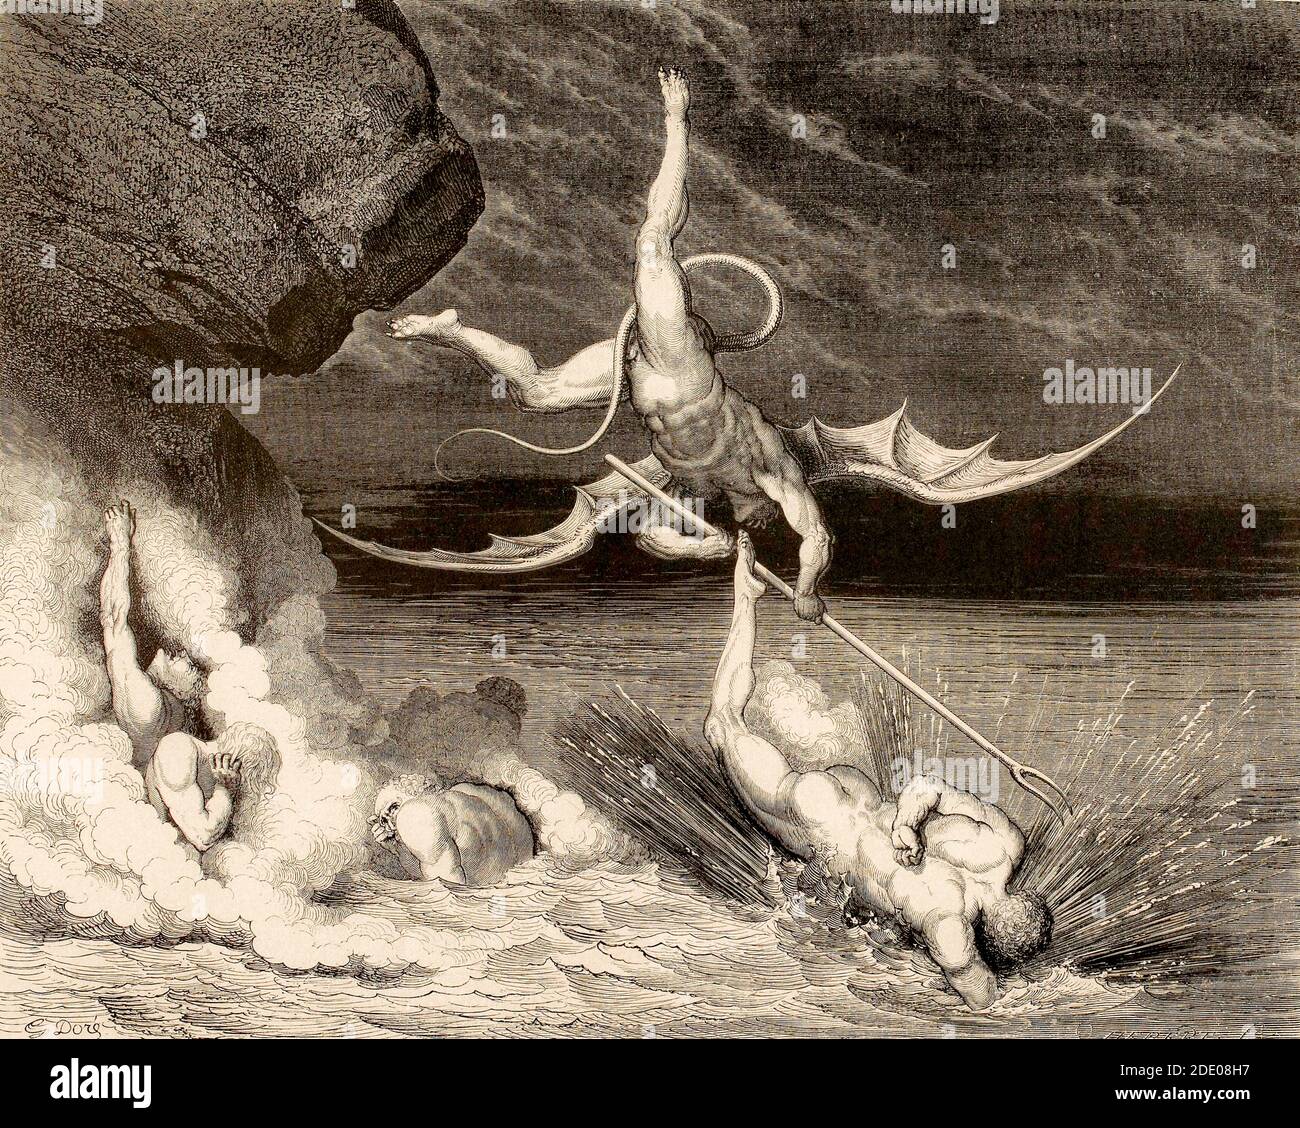 Dante Divina Commedia - Inferno - XXII canto - Alichino Insegue Ciampolo di Navarra - VIII cerchio - illustrazione di Gustave Dorè Foto Stock